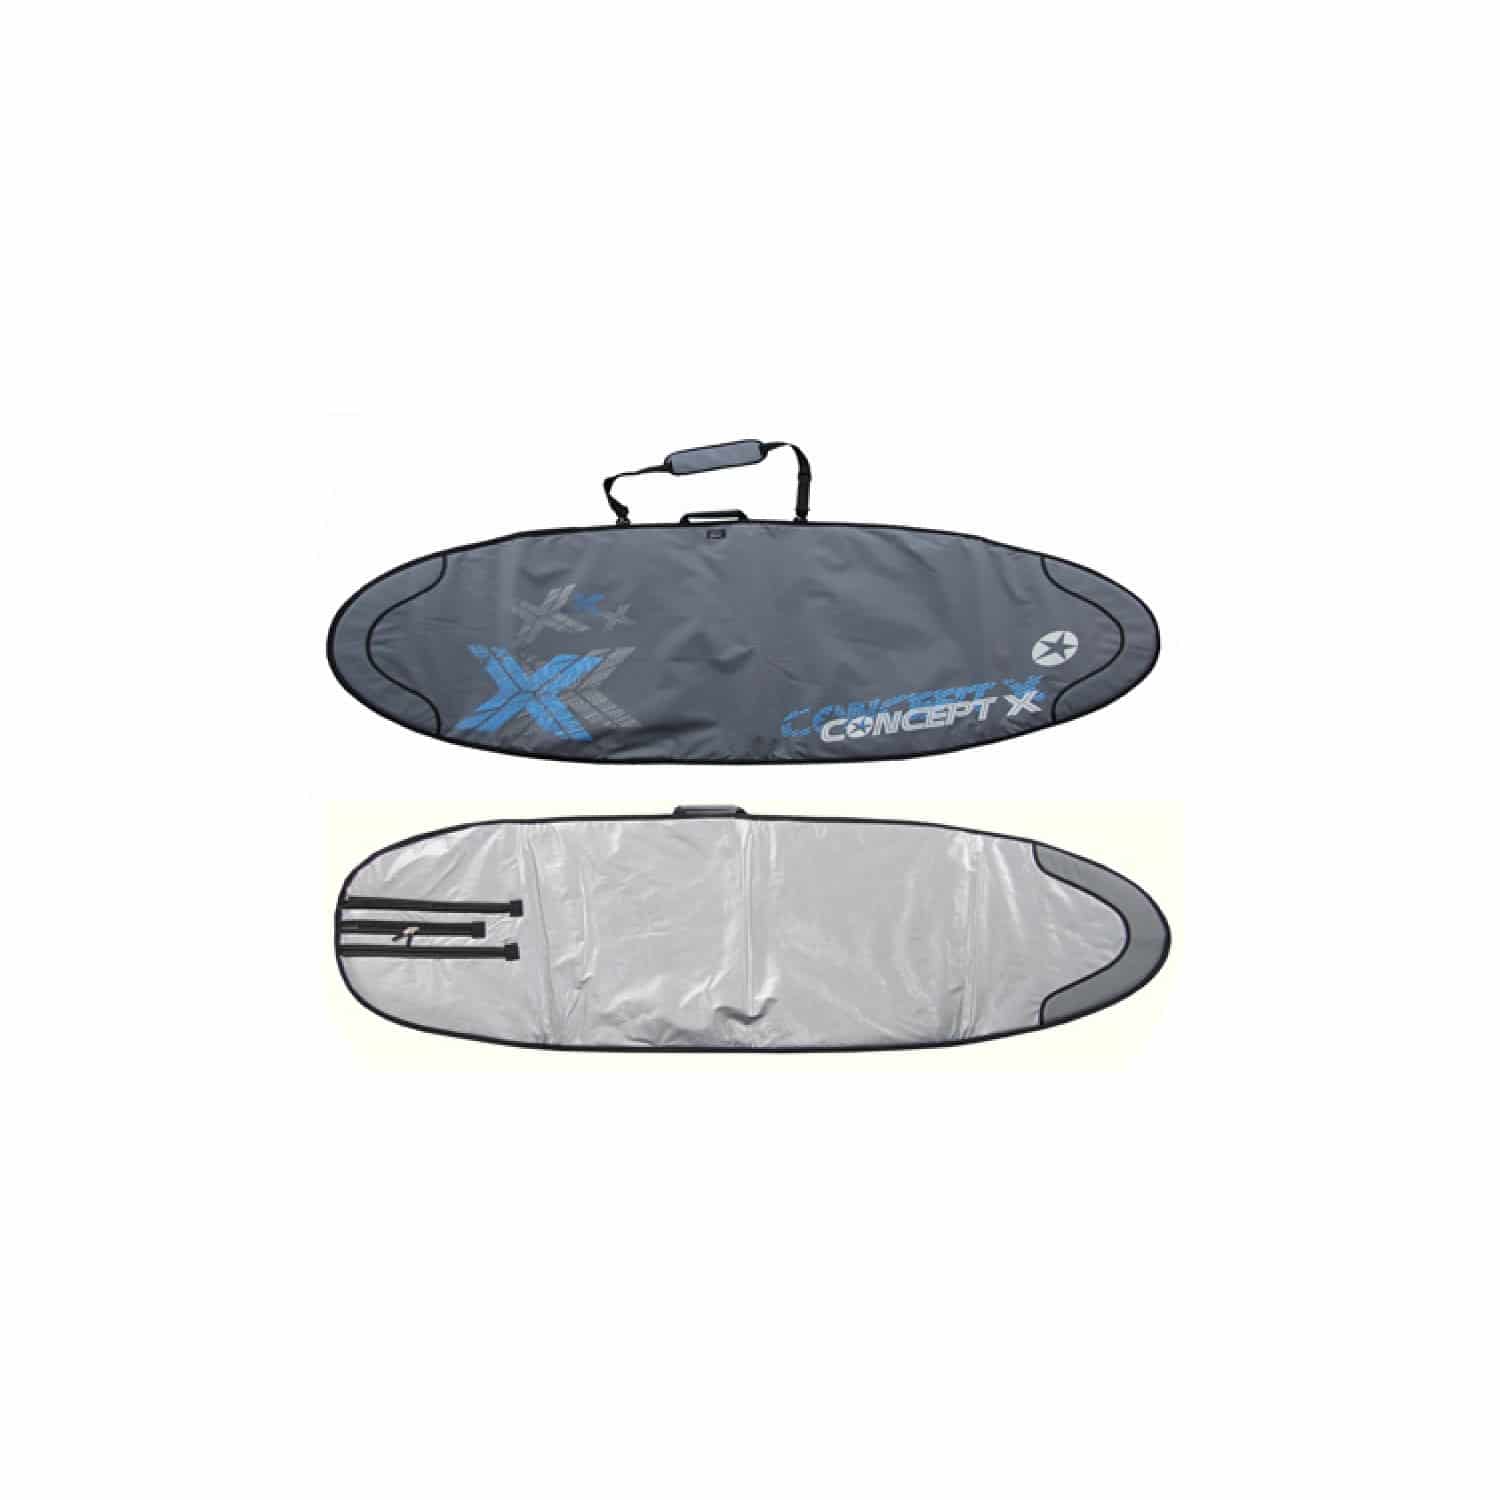 Concept X Rocket Boardbag